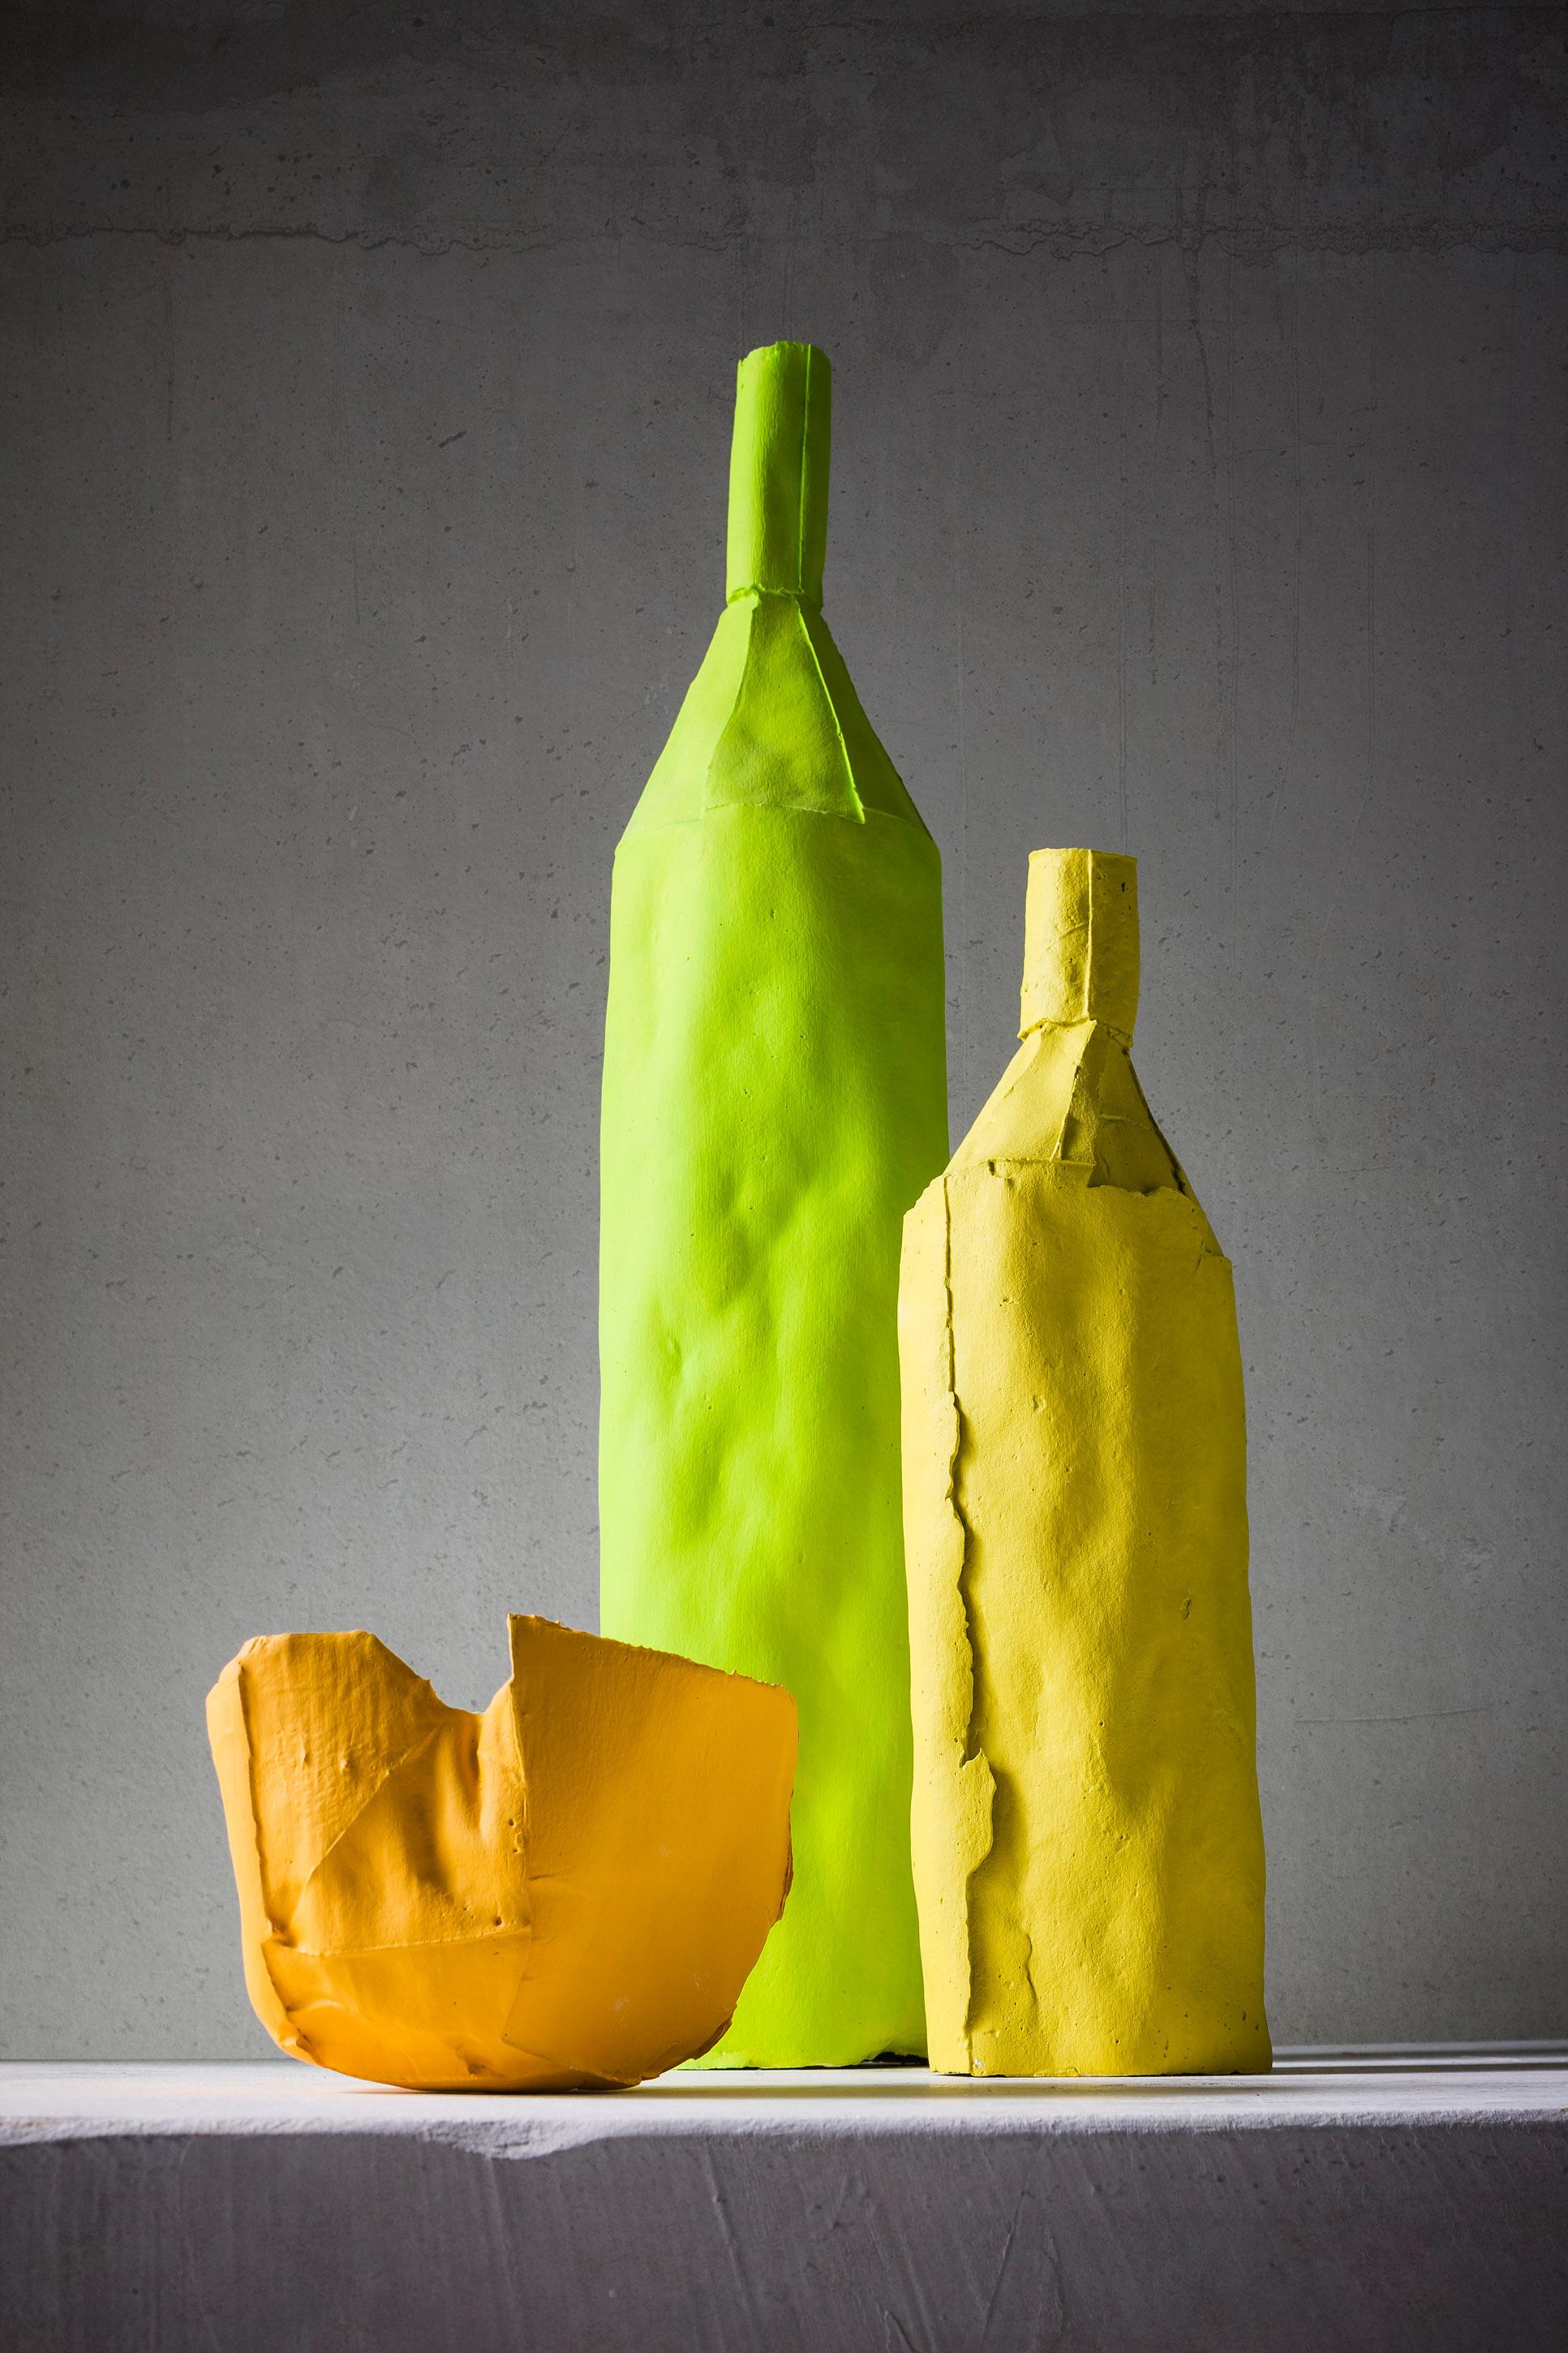 Le style distinctif de la céramiste italienne Paola Paronetto s'incarne dans la transformation d'objets d'usage quotidien en œuvres d'art décoratives et fonctionnelles exclusives. Cette remarquable bouteille jaune présente une texture captivante